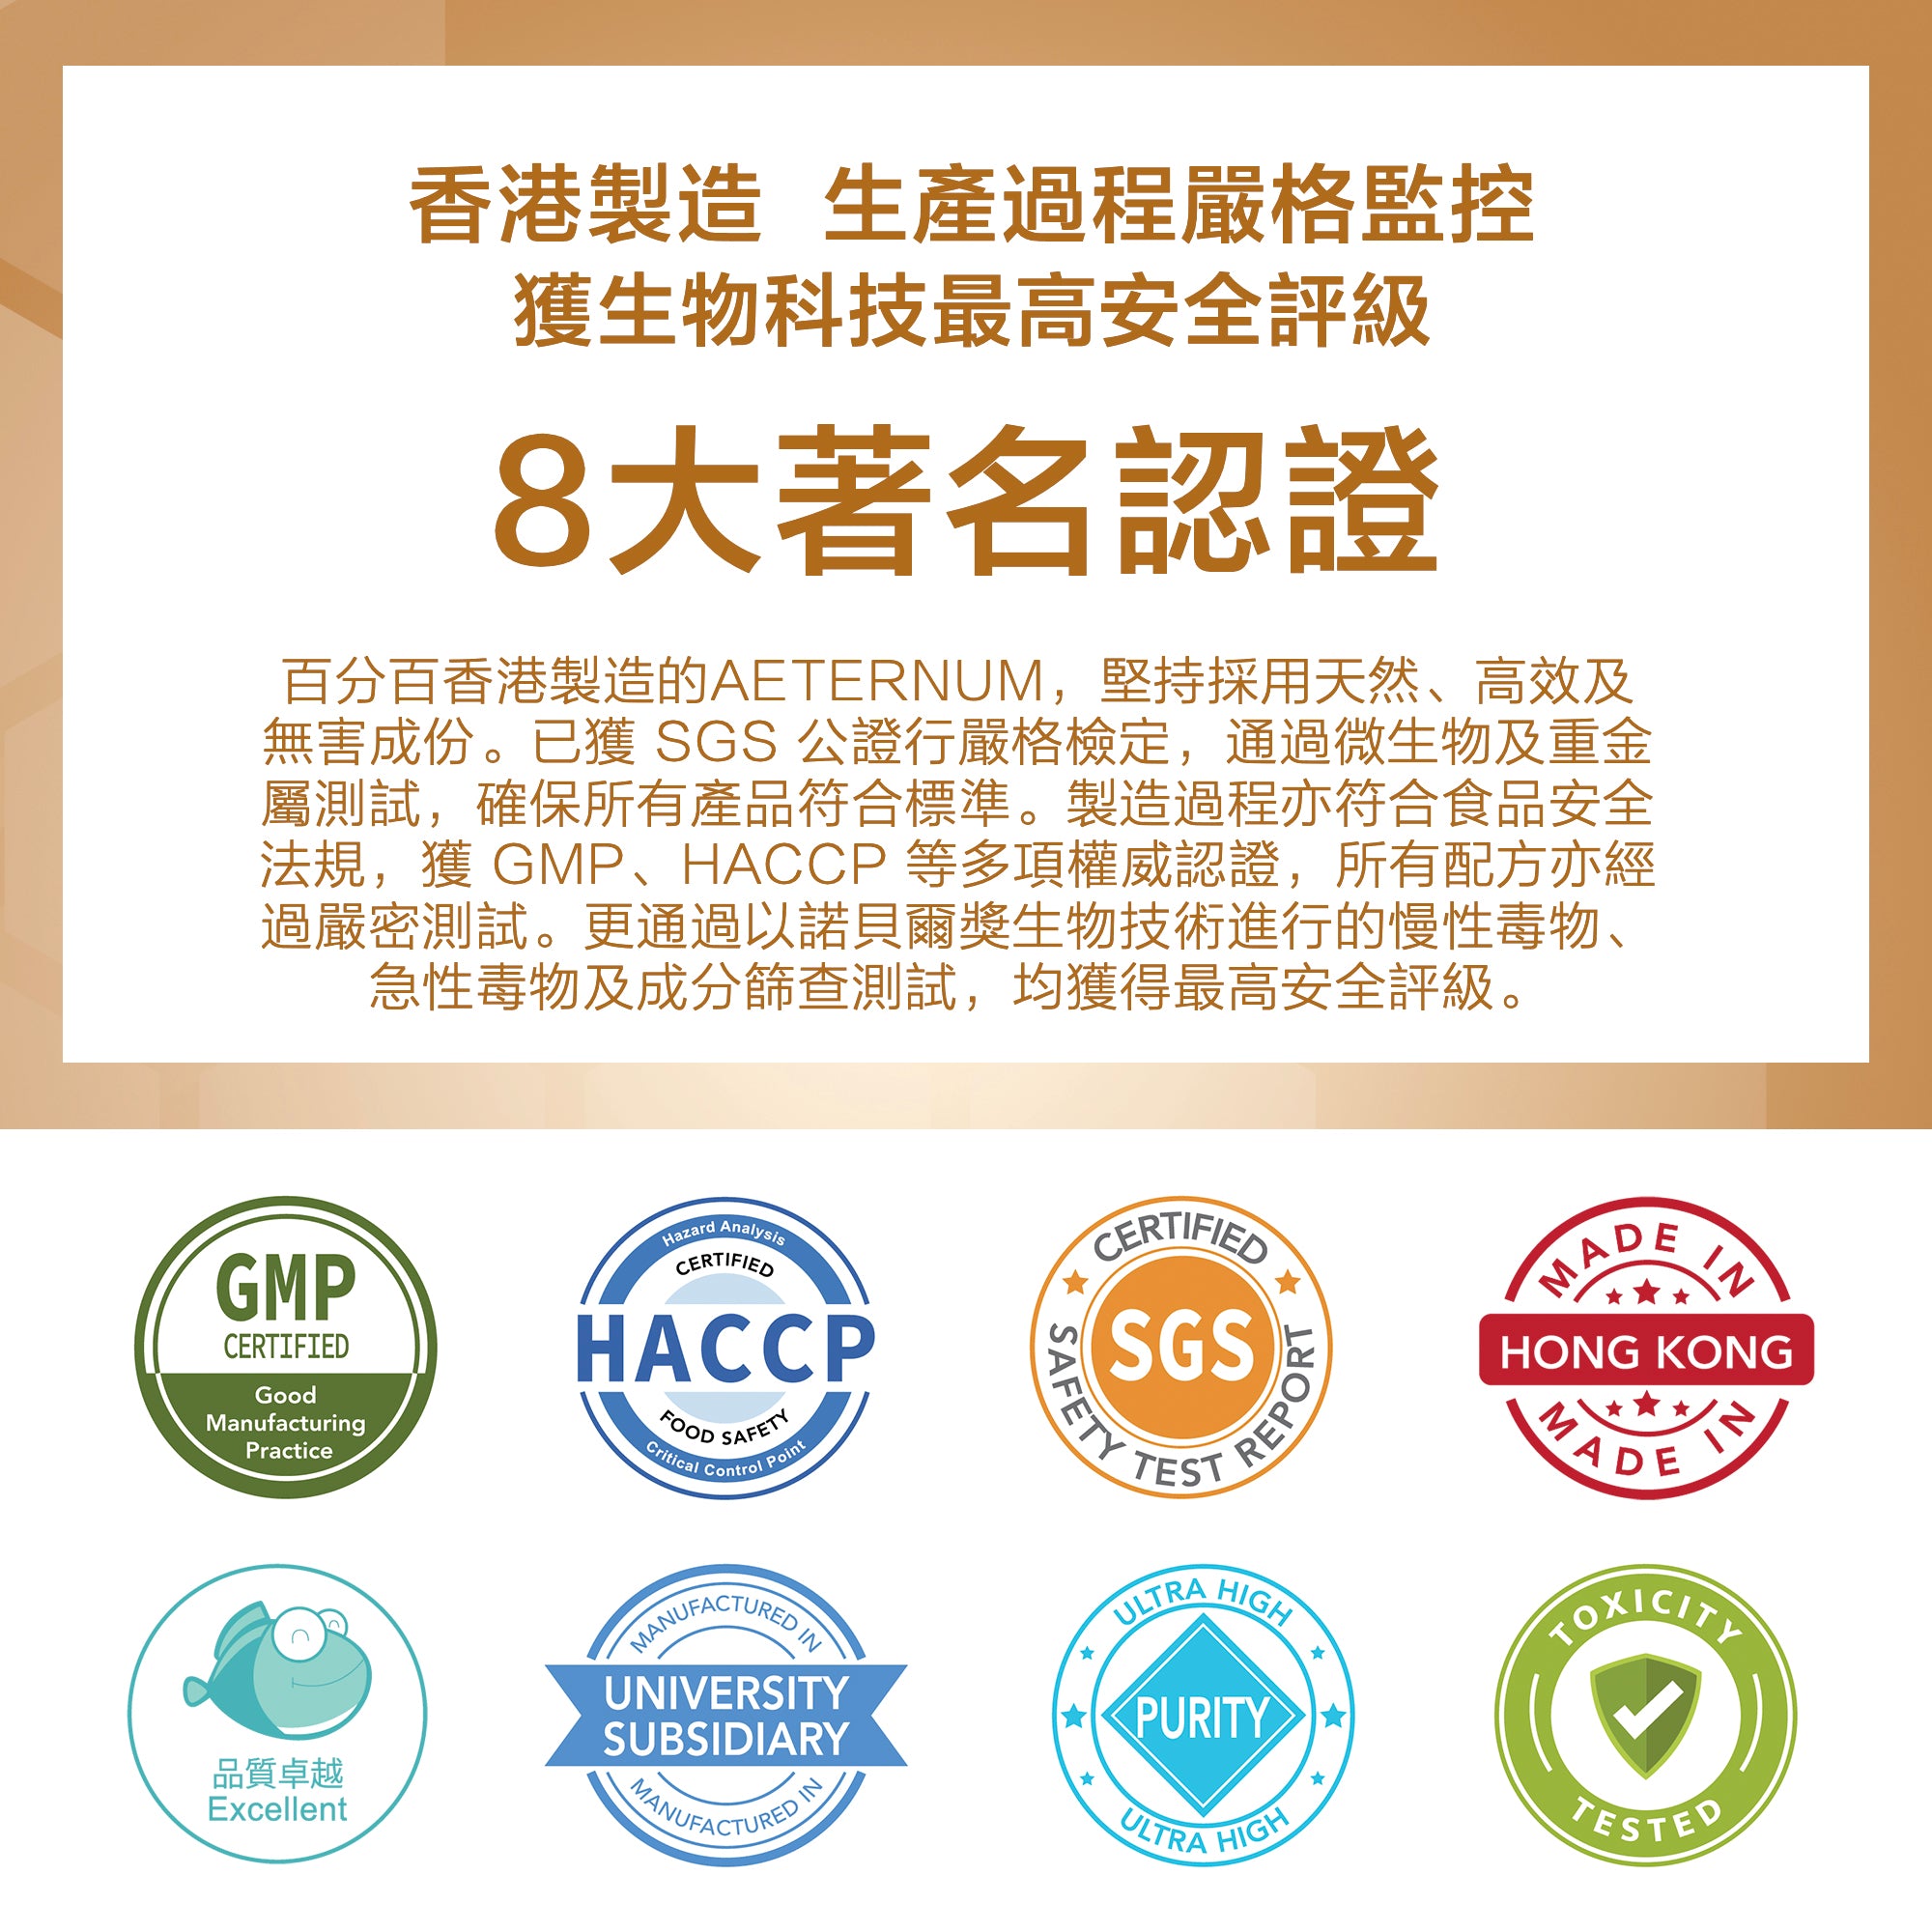 香港製造  生產過程嚴格監控，獲生物科技最高安全評級。8大著名認證，百分百香港製造的AETERNUM，堅持採用天然、高效及無害成份。已獲 SGS 公證行嚴格檢定，通過微生物及重金屬測試，確保所有產品符合標準。製造過程亦符合食品安全法規，獲 GMP、HACCP 等多項權威認證，所有配方亦經過嚴密測試。更通過以諾貝爾獎生物技術進行的慢性毒物、急性毒物及成分篩查測試，均獲得最高安全評級。高標準的生產線 所有產品均在大學製造及經過嚴格測試。 產品通過SGS的測試和安全性保證，確保產品純度。生產過程均於潔淨室內進行，並通過多個質量監控程序，保證過程嚴謹安全，並獲得GMP認證。  食品安全檢測 每批產品均通過國際公認的 SGS 香港通用公證行檢定，所有產品均符合安全標準及取得HACCP認證，質素如一、功效一致。  產品採用諾貝爾生物技術進行慢性毒物、急性毒物及成分篩查測試，均獲得最高安全評級。  學術伙伴 產品與香港著名大學之附屬機構共同合作而成，旨在改善都市人的健康和生活質量。  香港製造 我們的辦公室總部、生產線和安全檢查均位於香港，以便密切監控質量並追踪每個生產步驟。我們會持續改進並提升至更高標準。